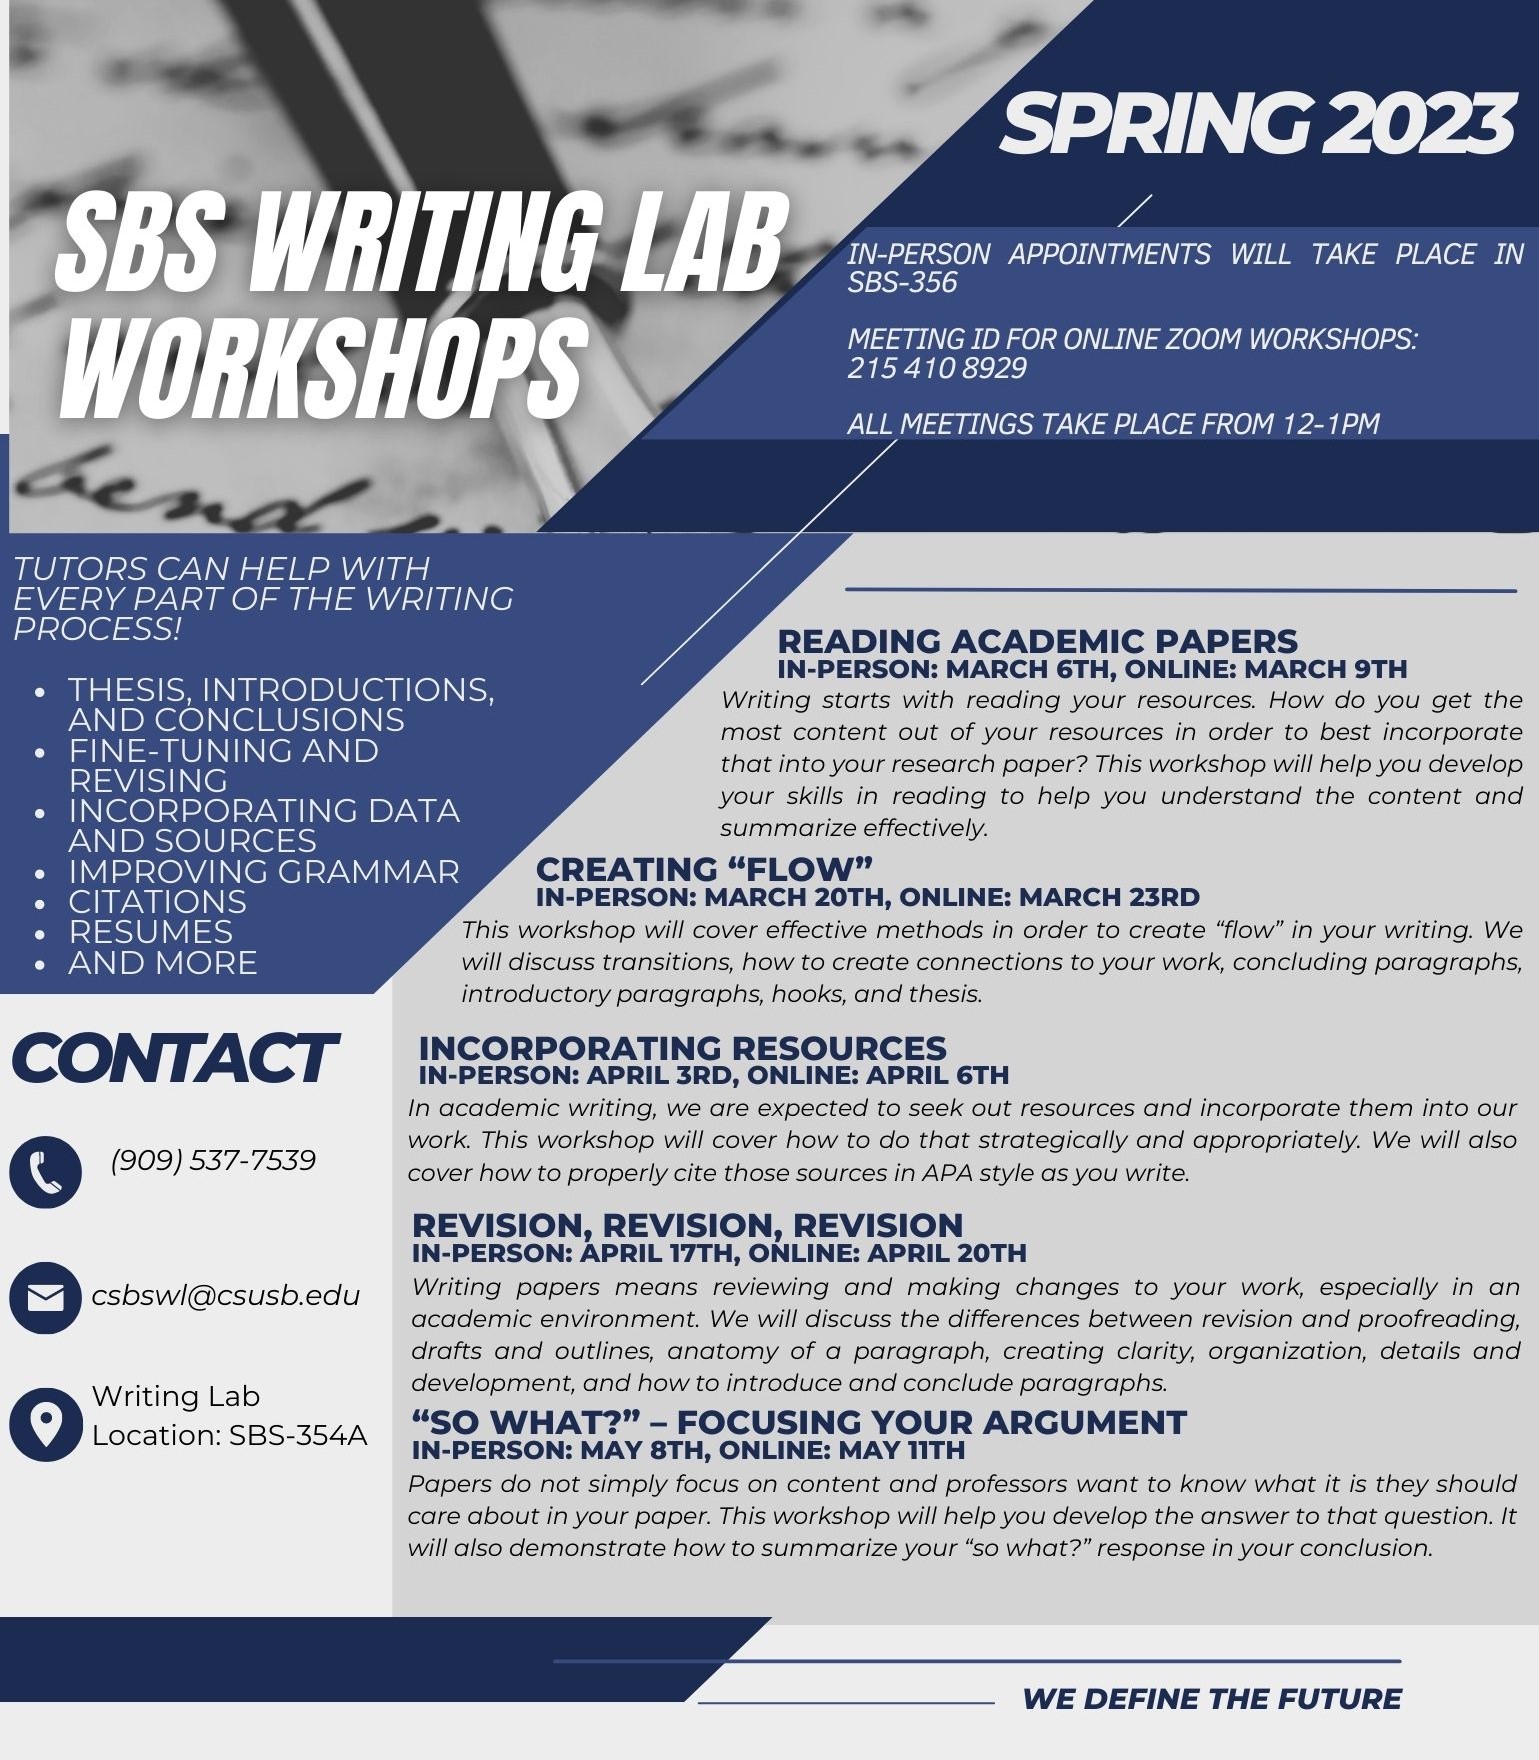 SBS Writing Lab workshops